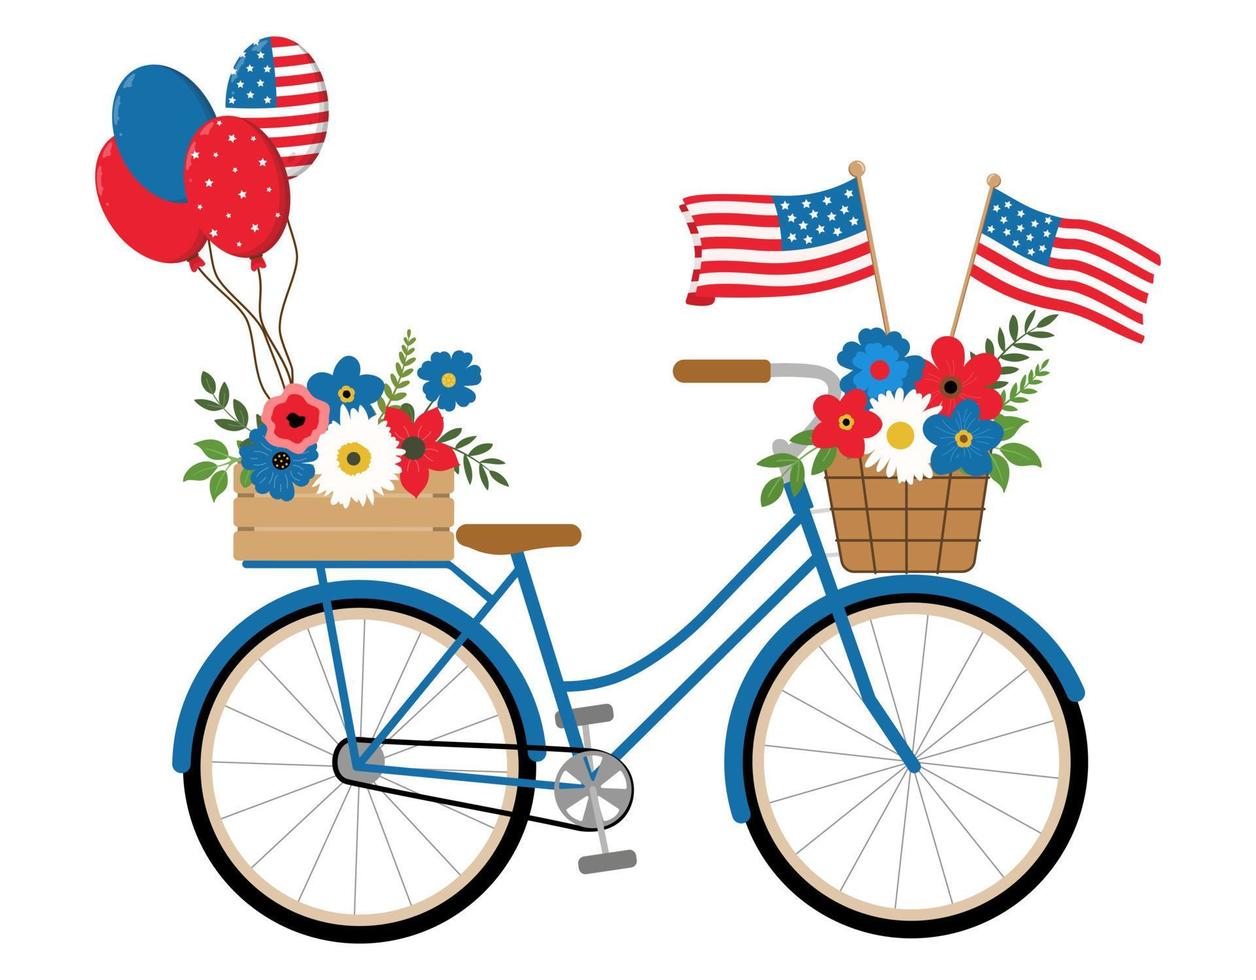 Patriotisches blaues Fahrrad mit amerikanischen Flaggen, roten, weißen, blauen Blumen und Ballonillustration, lokalisiert auf weißem Hintergrund. 4. Juli themenorientierte Design-Feiertagskarte. vektor